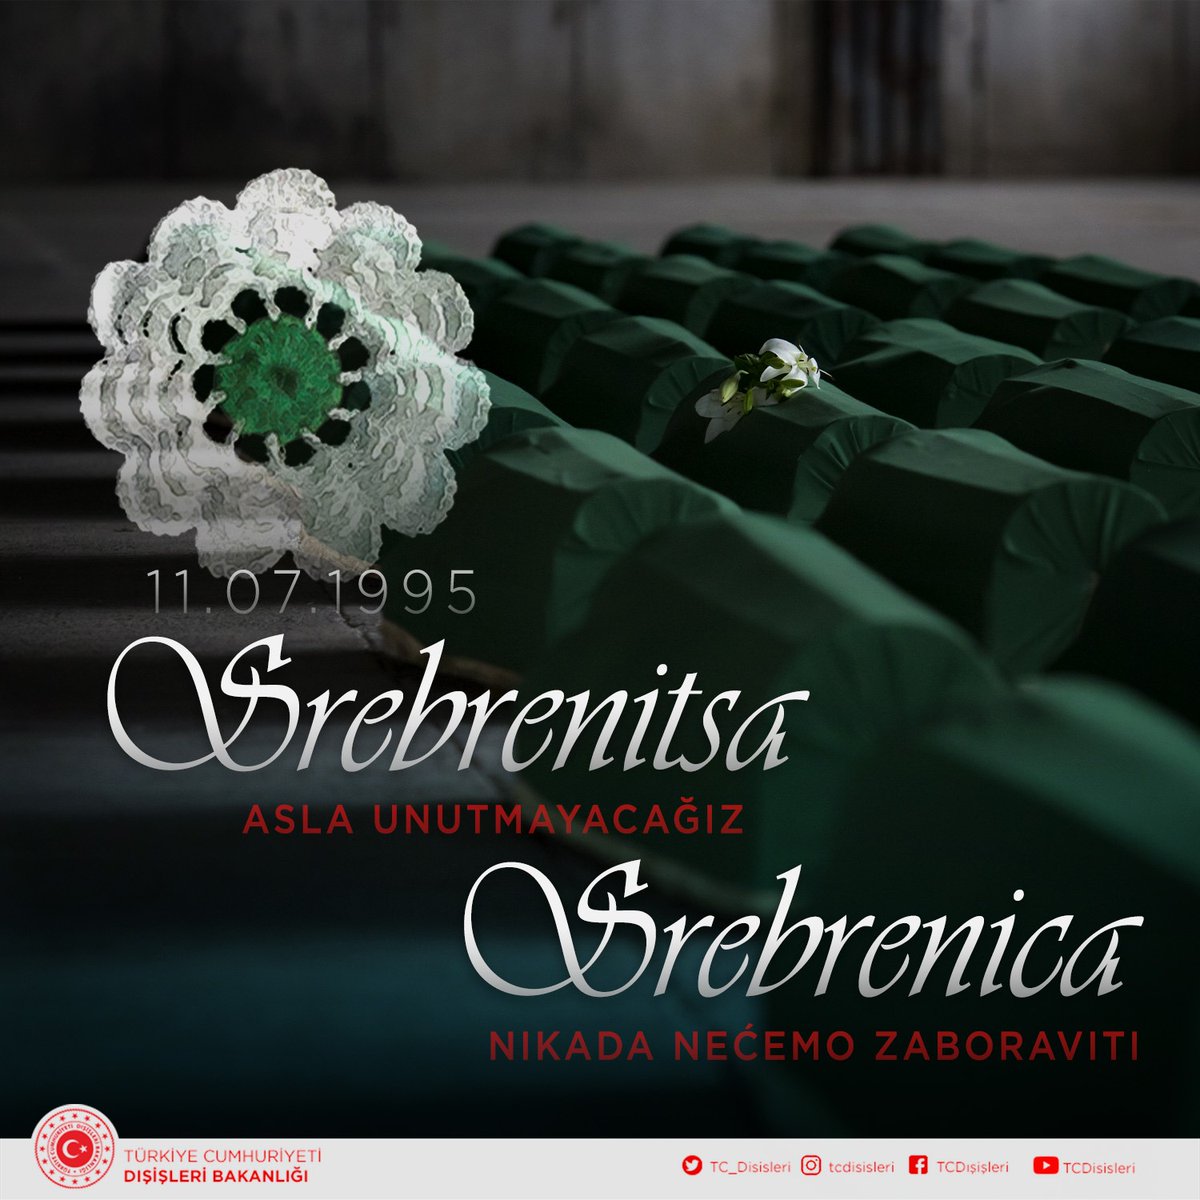 28. yıldönümünde, #Srebrenitsa Soykırımı’nı bir kez daha şiddetle lanetliyoruz. Şehitleri rahmetle anıyor, ailelerinin acılarını paylaşıyoruz. 
#BirDahaAsla